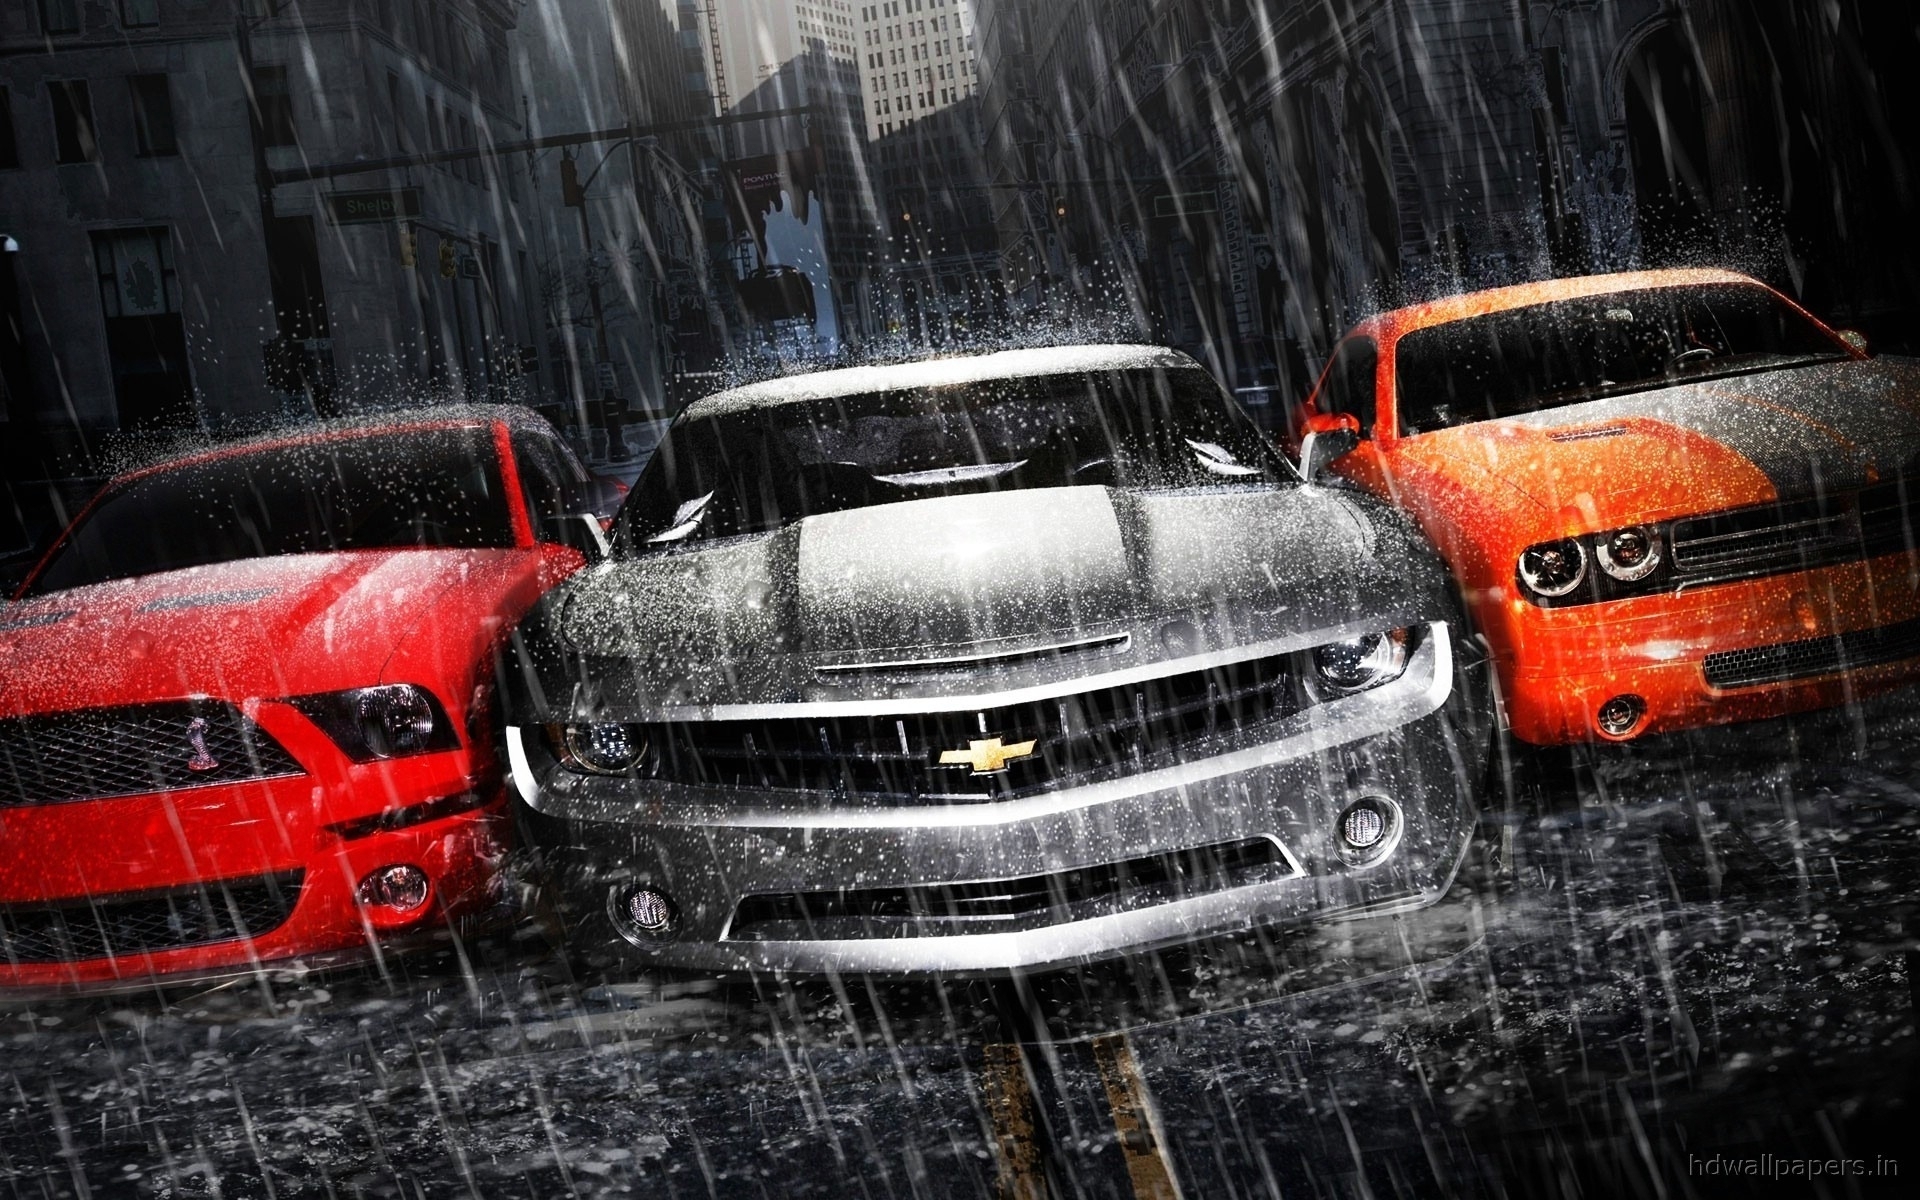 Скачать обои бесплатно Шевроле (Chevrolet), Транспорт, Машины, Дождь картинка на рабочий стол ПК